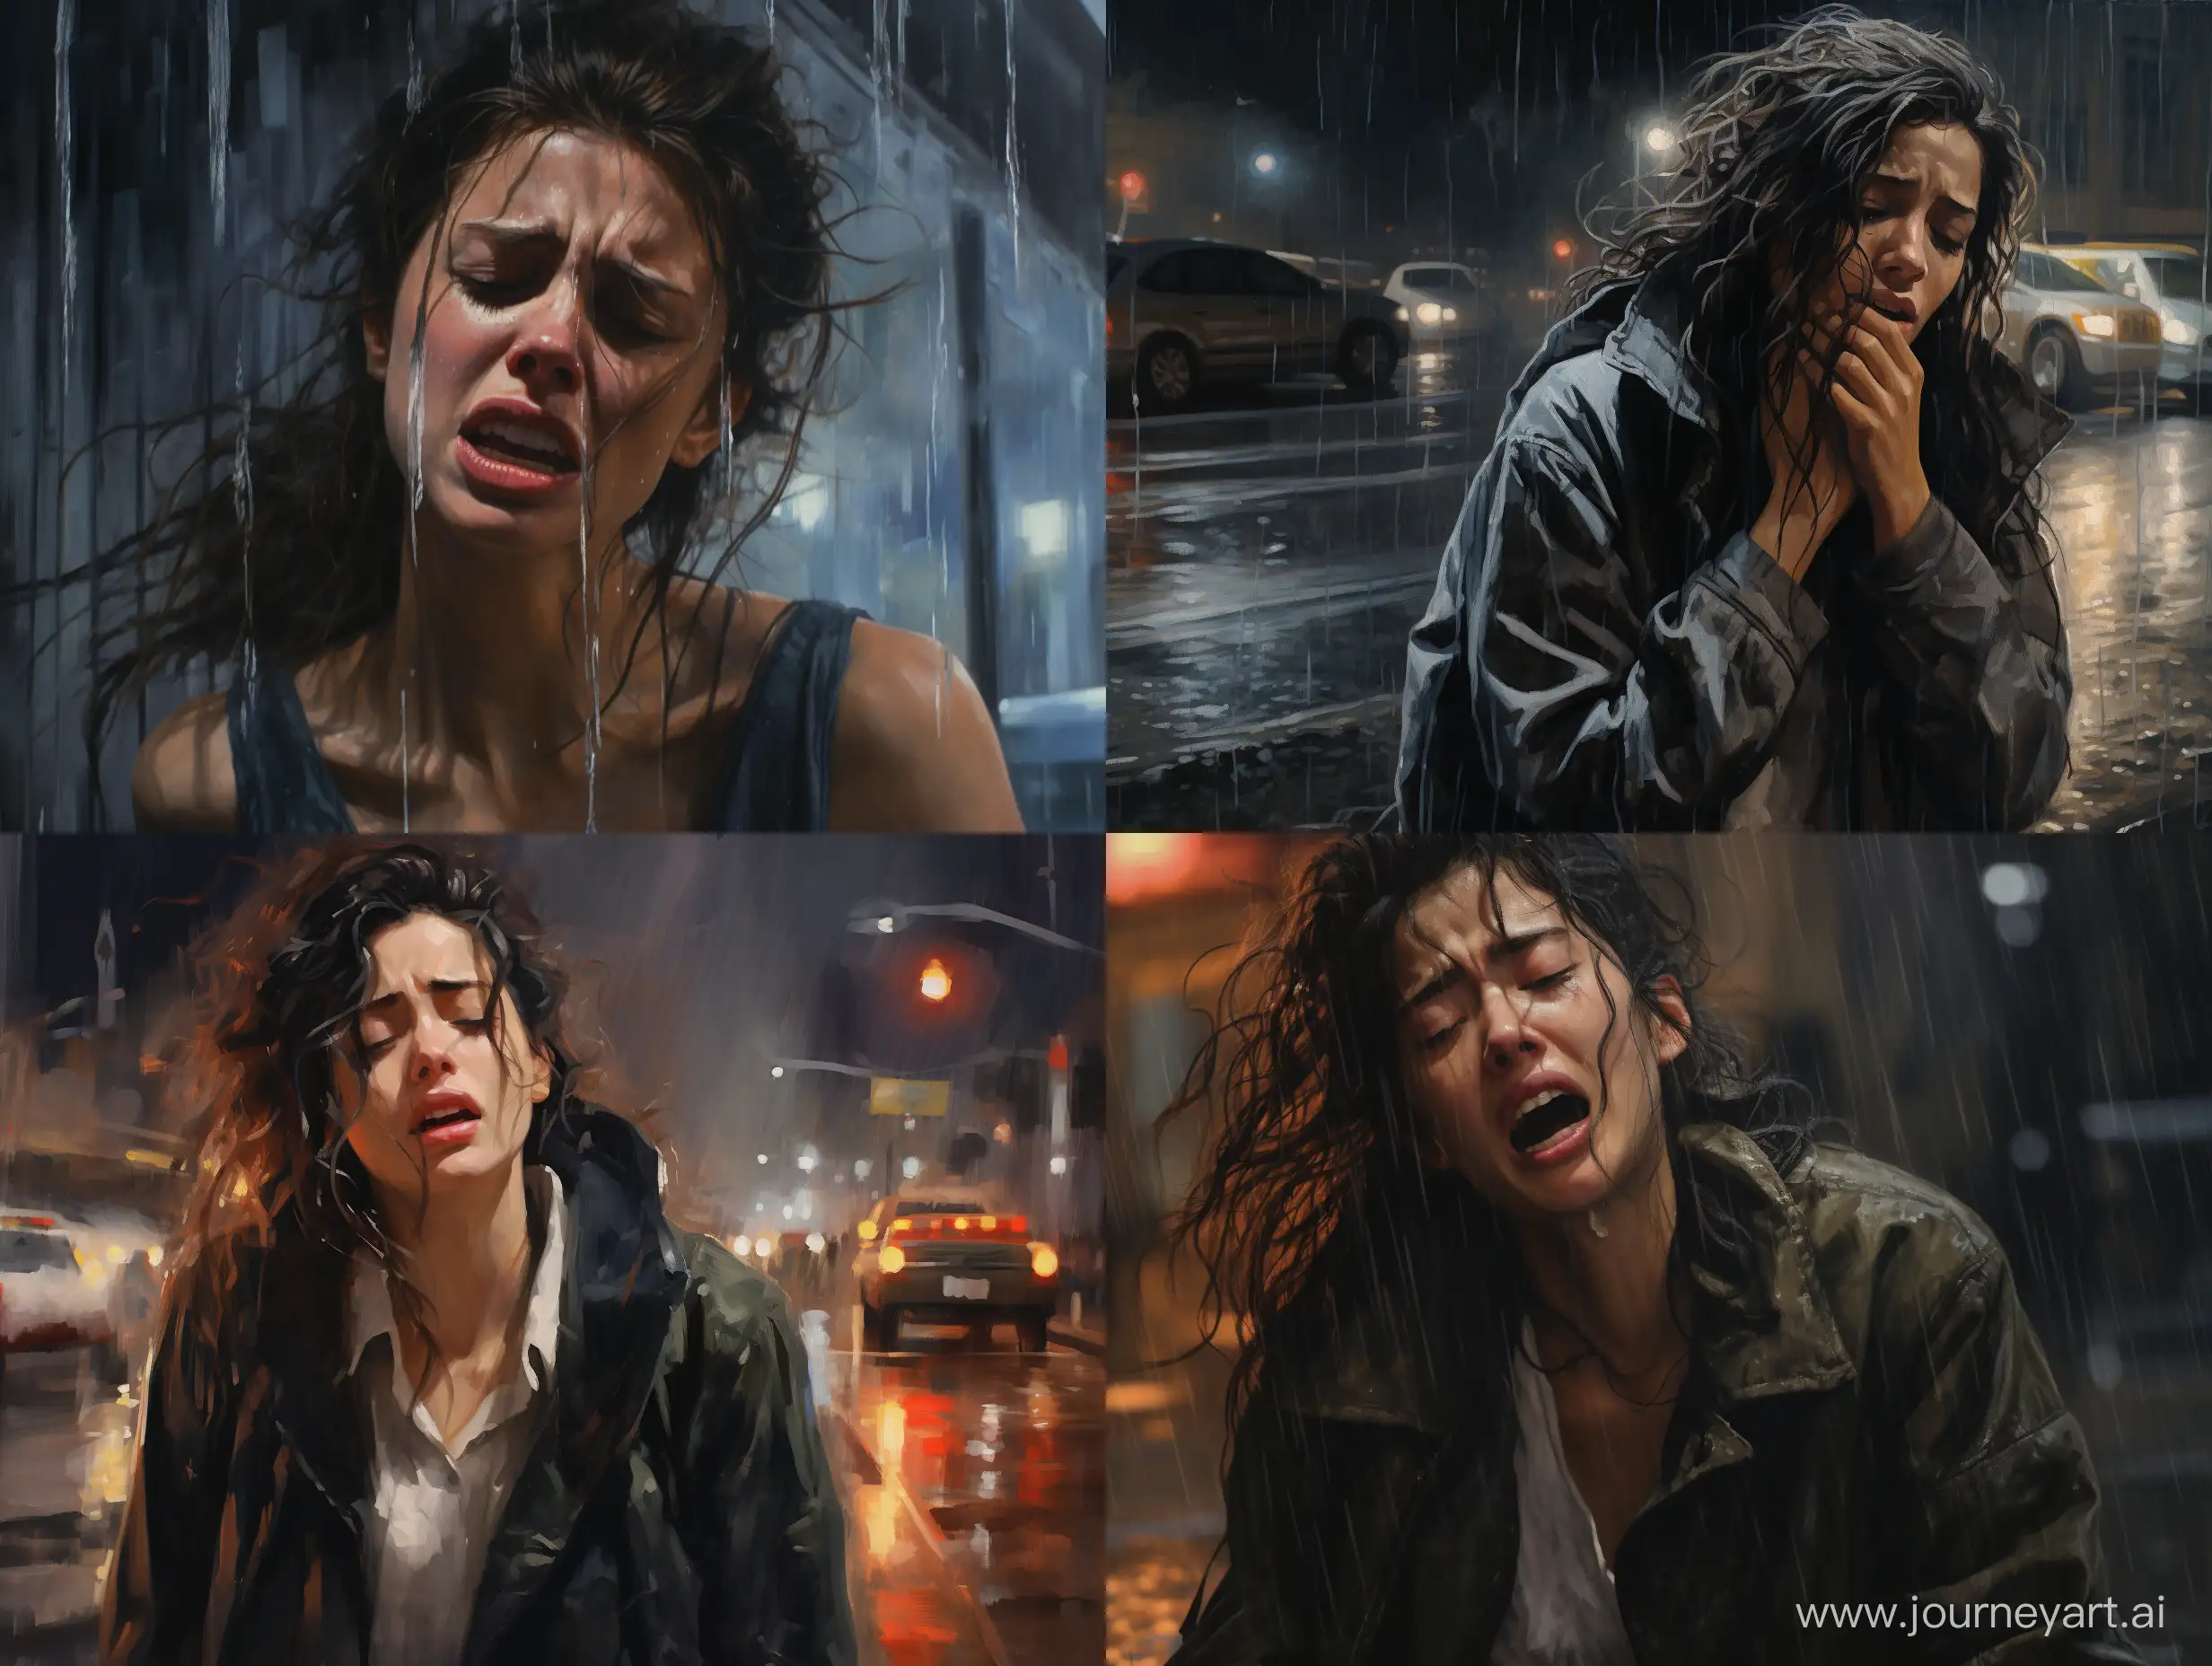 Heartbreaking-Scene-Woman-Weeping-in-Rainstorm-on-City-Street